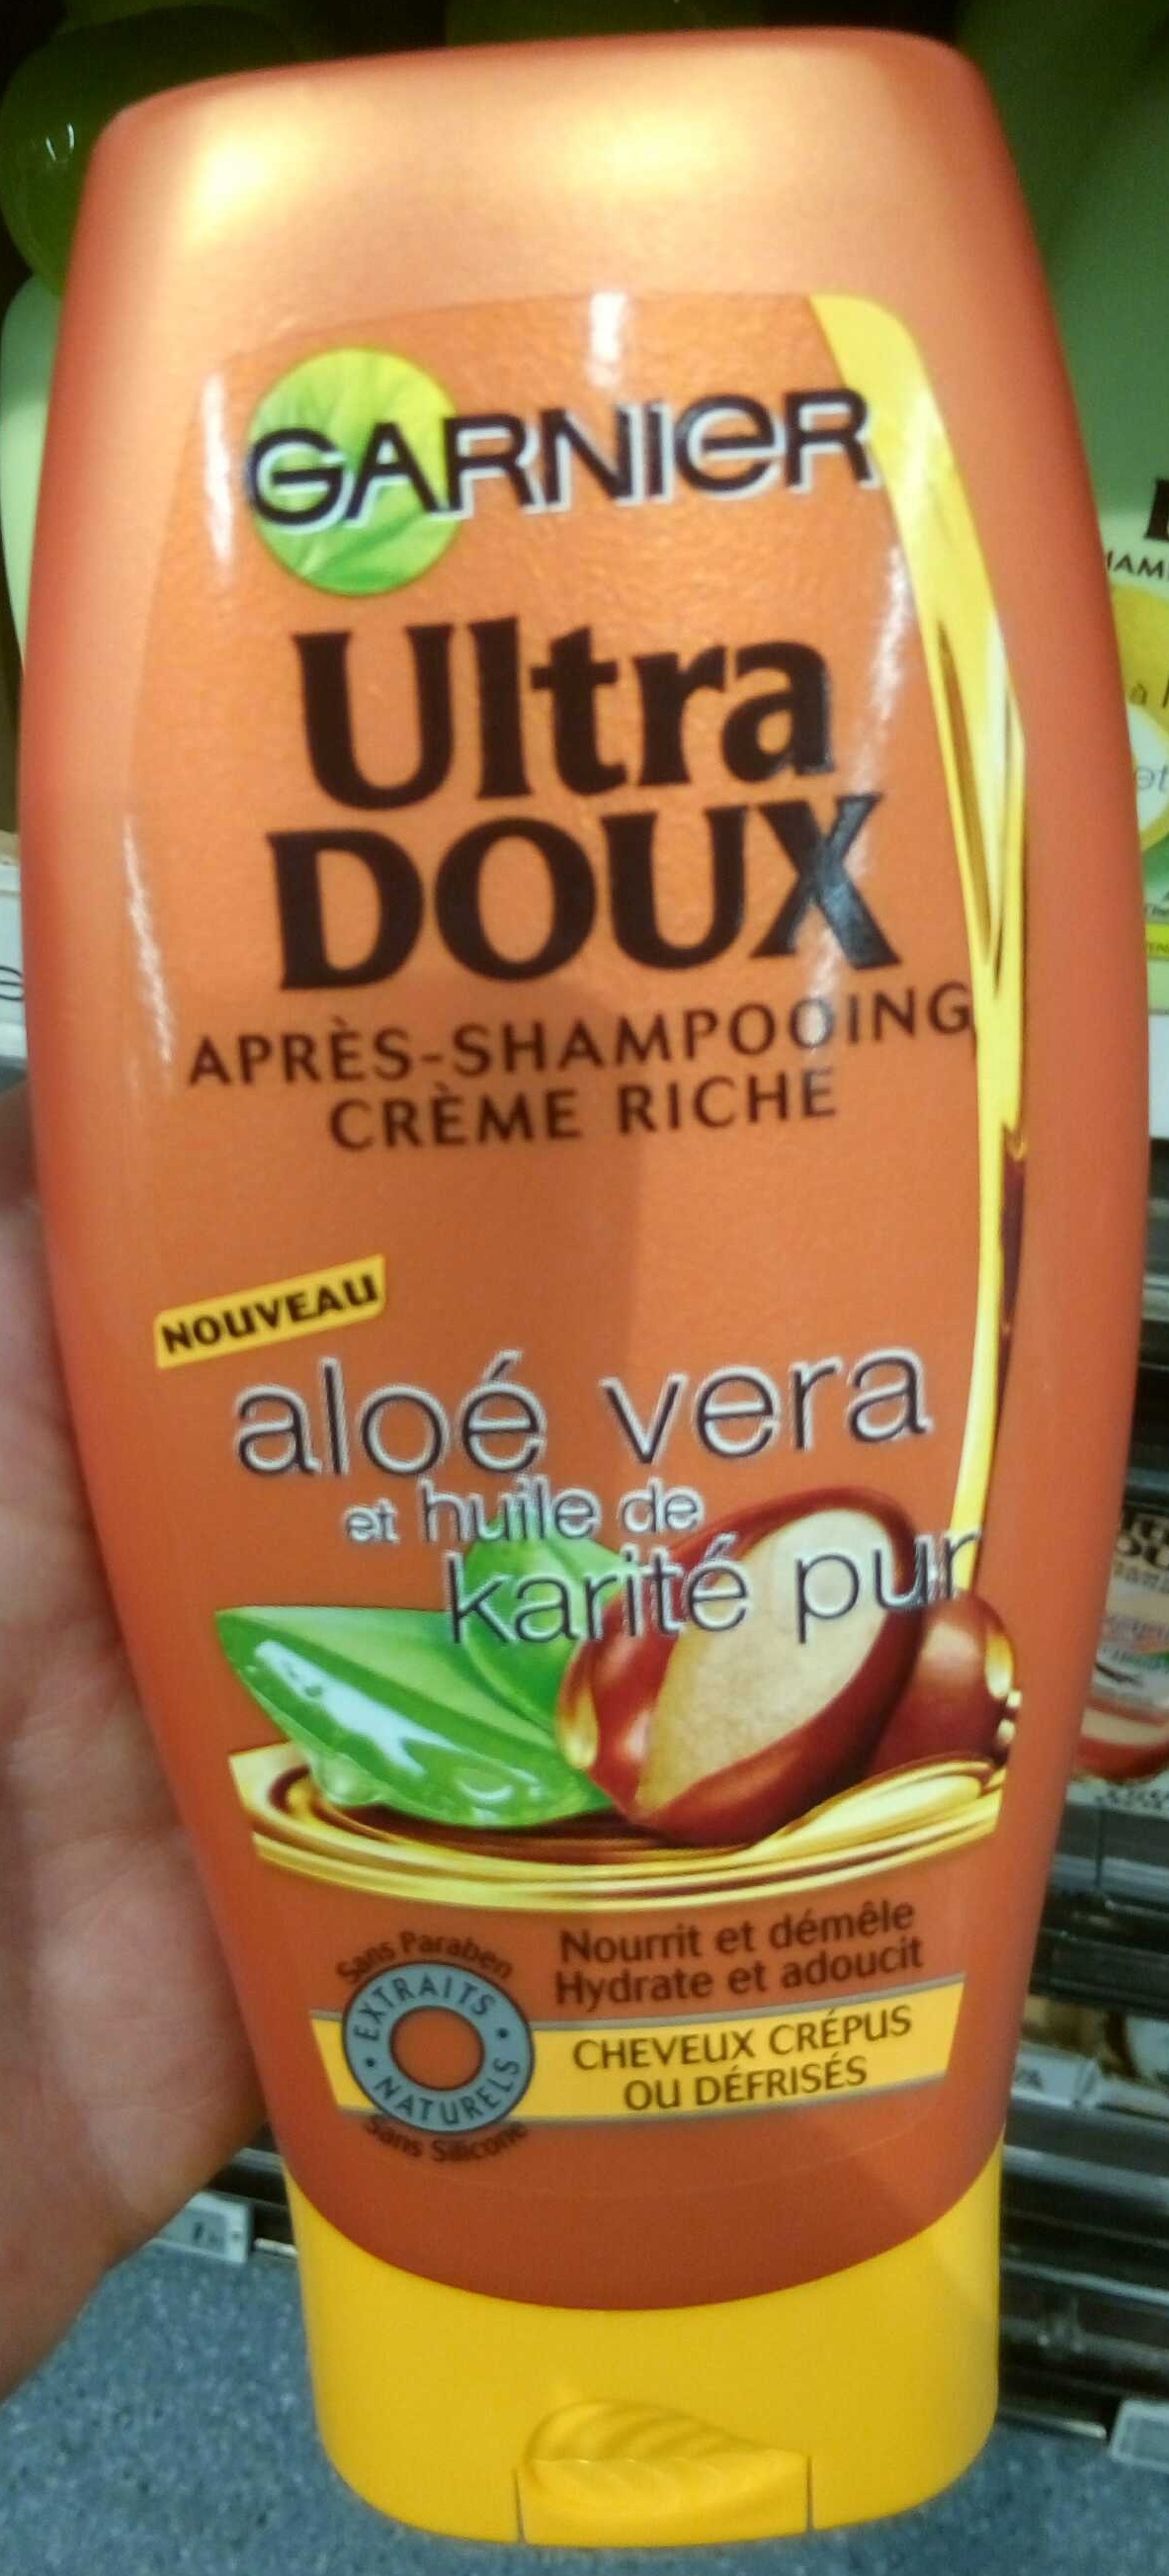 Ultra Doux Après-shampooing crème riche Aloé vera et huile de karité pur - Produit - fr